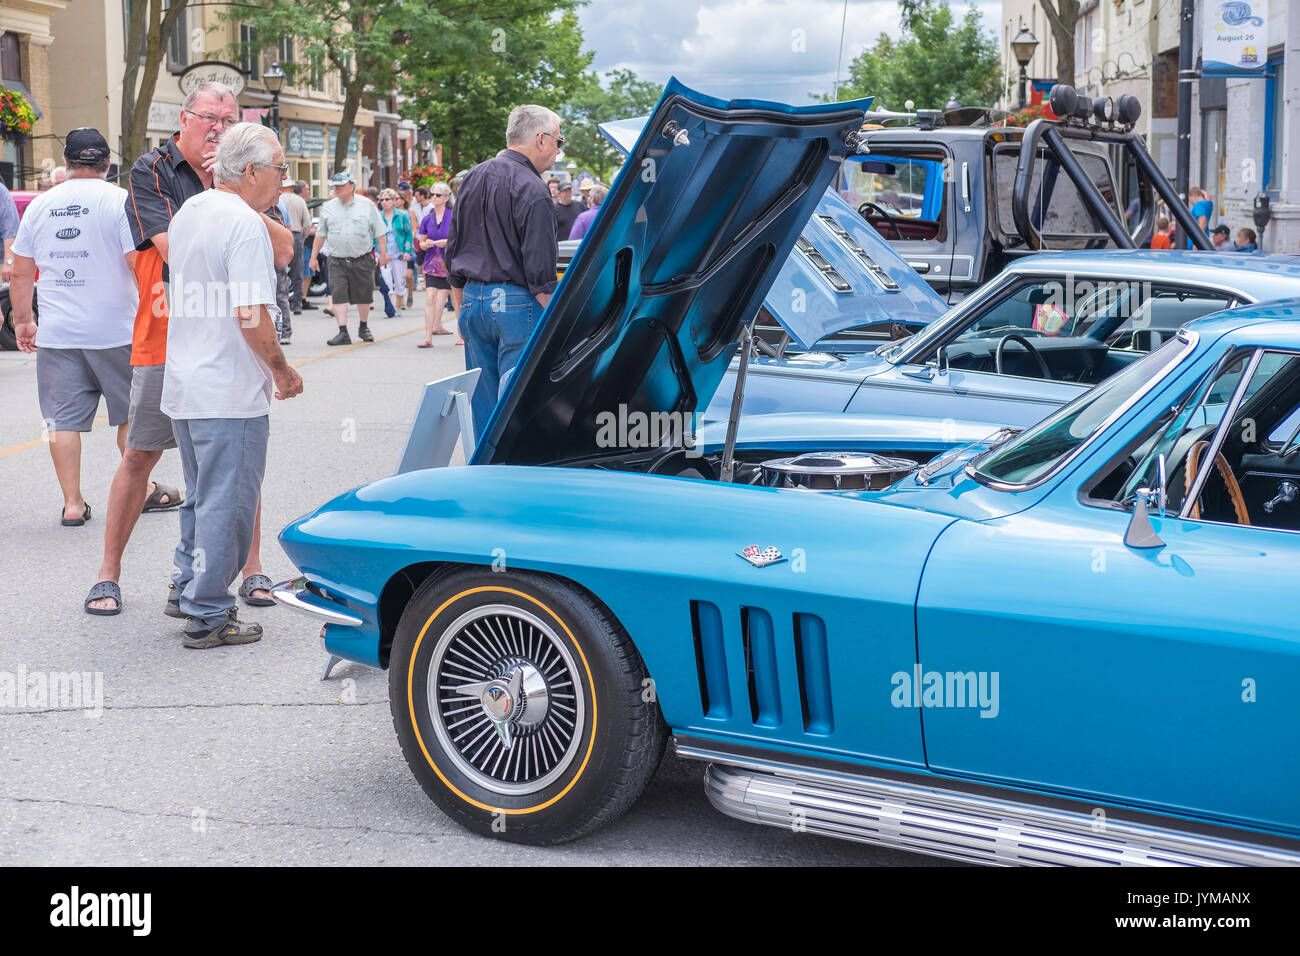 ORILLIA ONTARIO KANADA - 17. August 2017: 19. jährlichen Downtown Orillia Classic Car Show, eine erstaunliche Sammlung von über 400 klassische Autos auf Anzeige auf Stockfoto